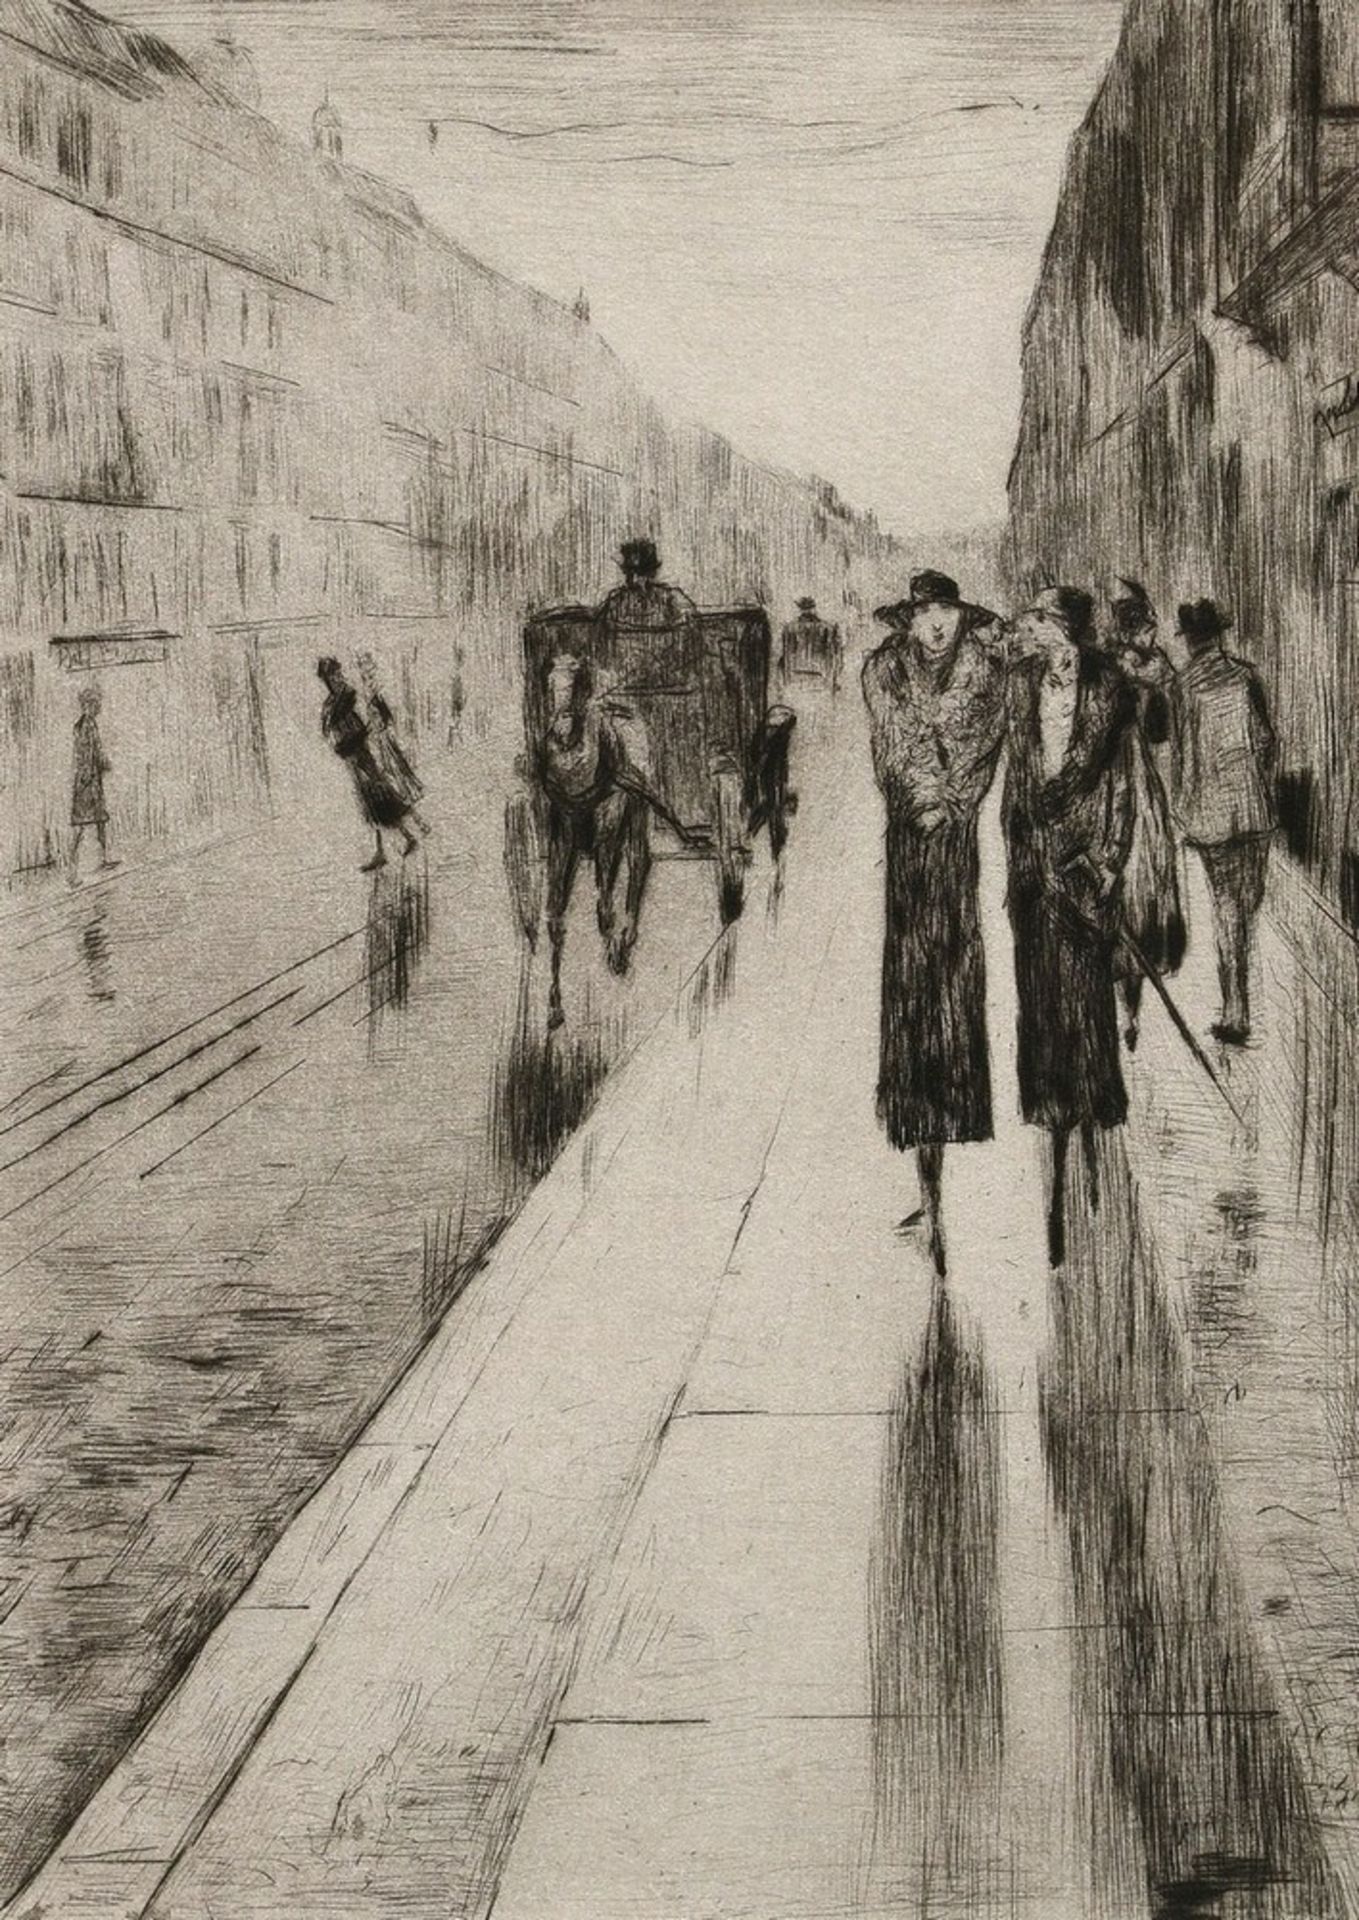 Ury, Lesser (1861-1931) "Straßenszene in Berlin (Spaziergänger im Regen)" um 1919/1982, Radierung, 